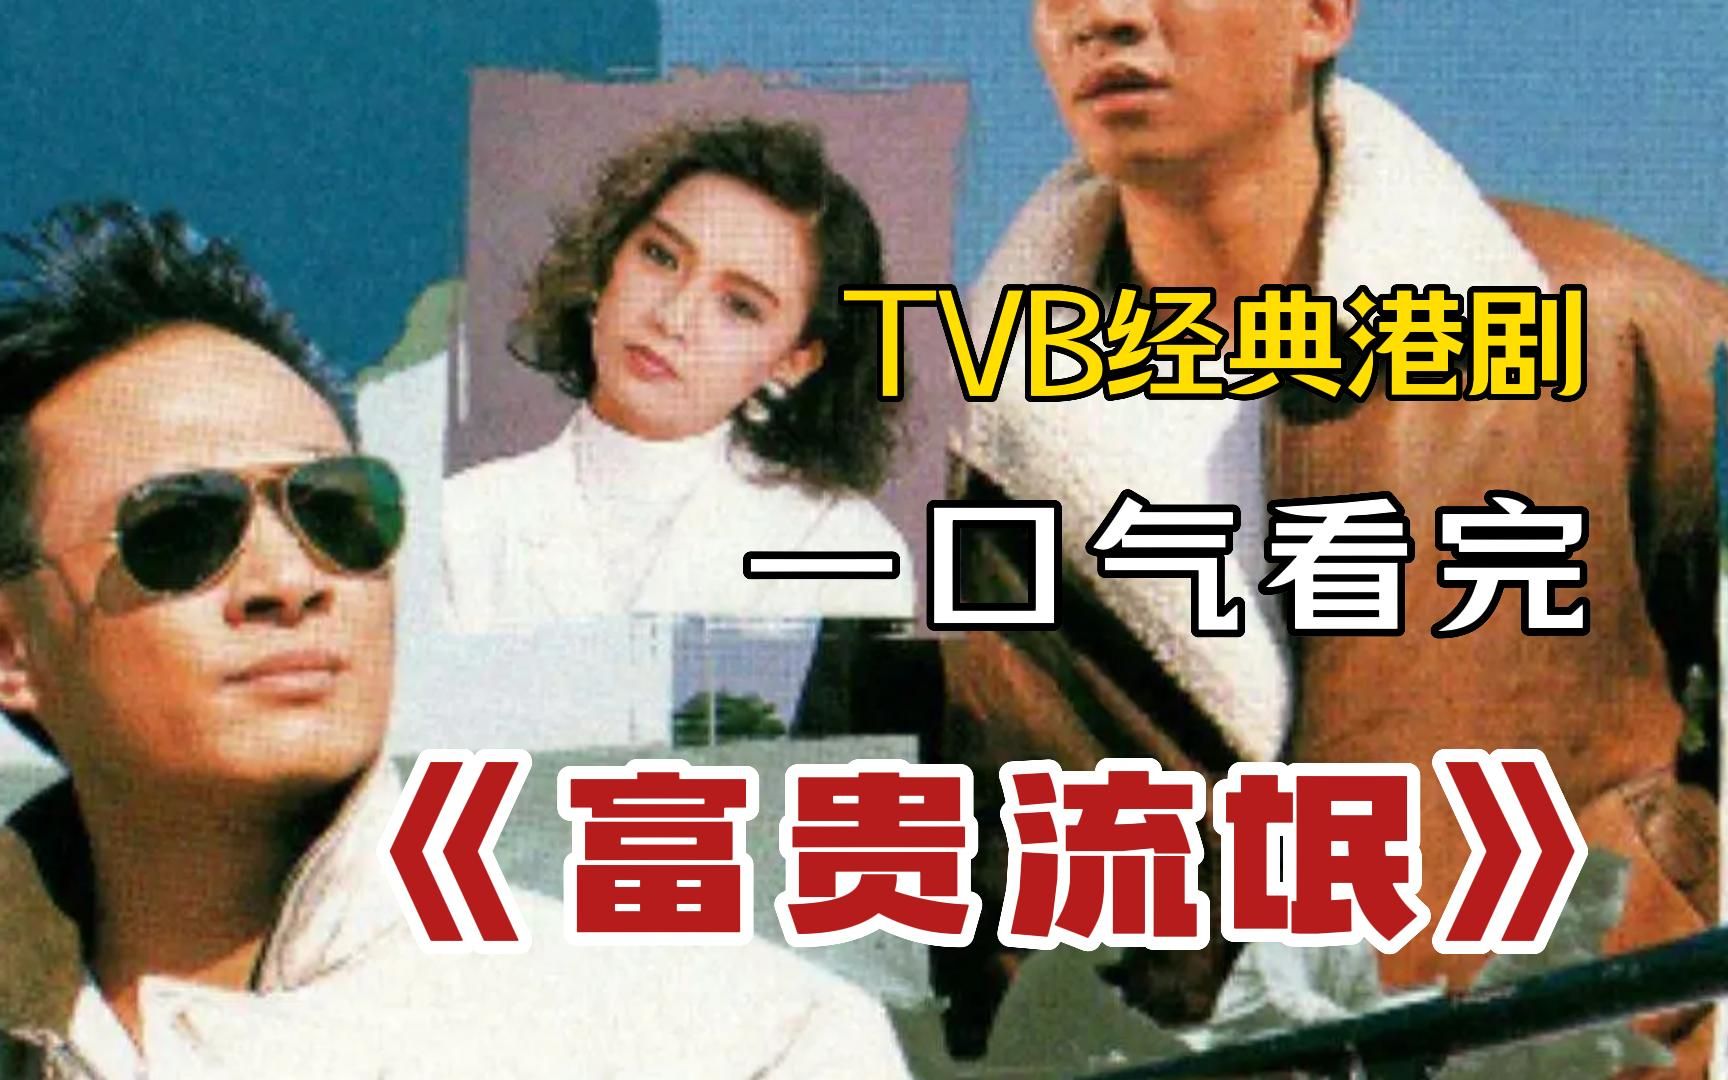 一口气看完TVB经典港剧《富贵流氓》，讲述一个年青人如何经不起一朝富贵的考验，终于沦为流氓